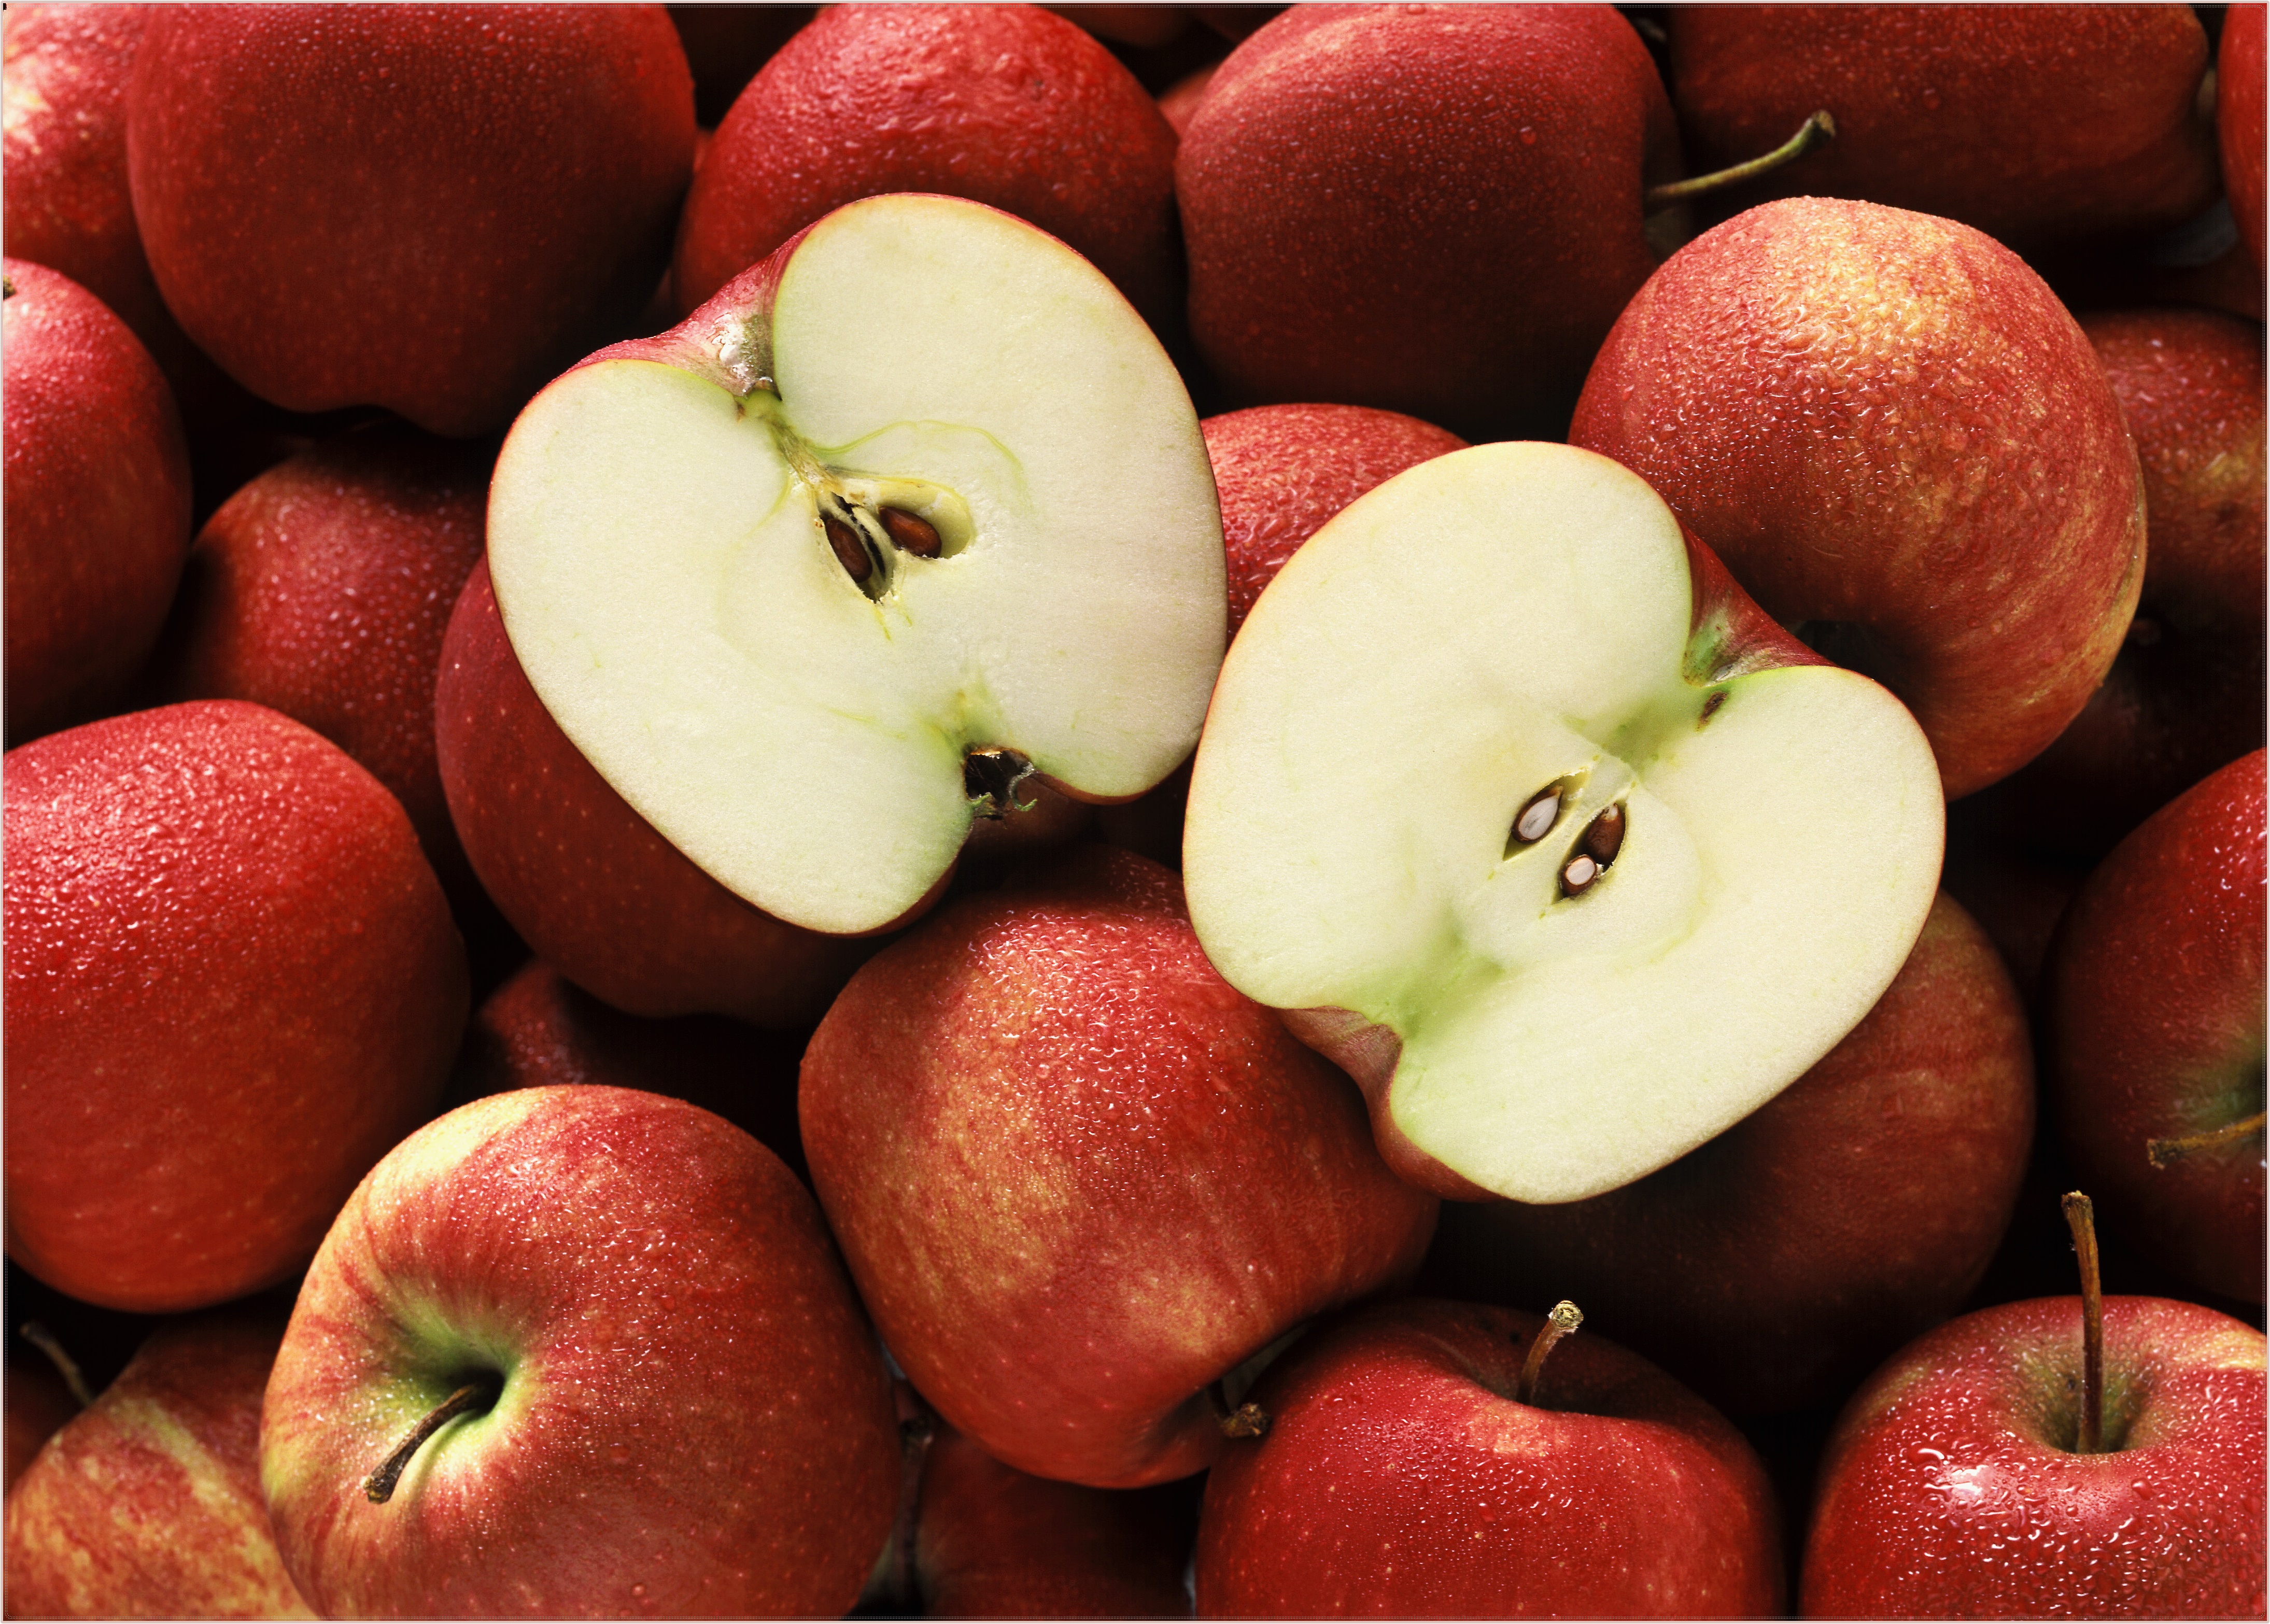 아침에 먹는 사과는 건강에 좋은 효능